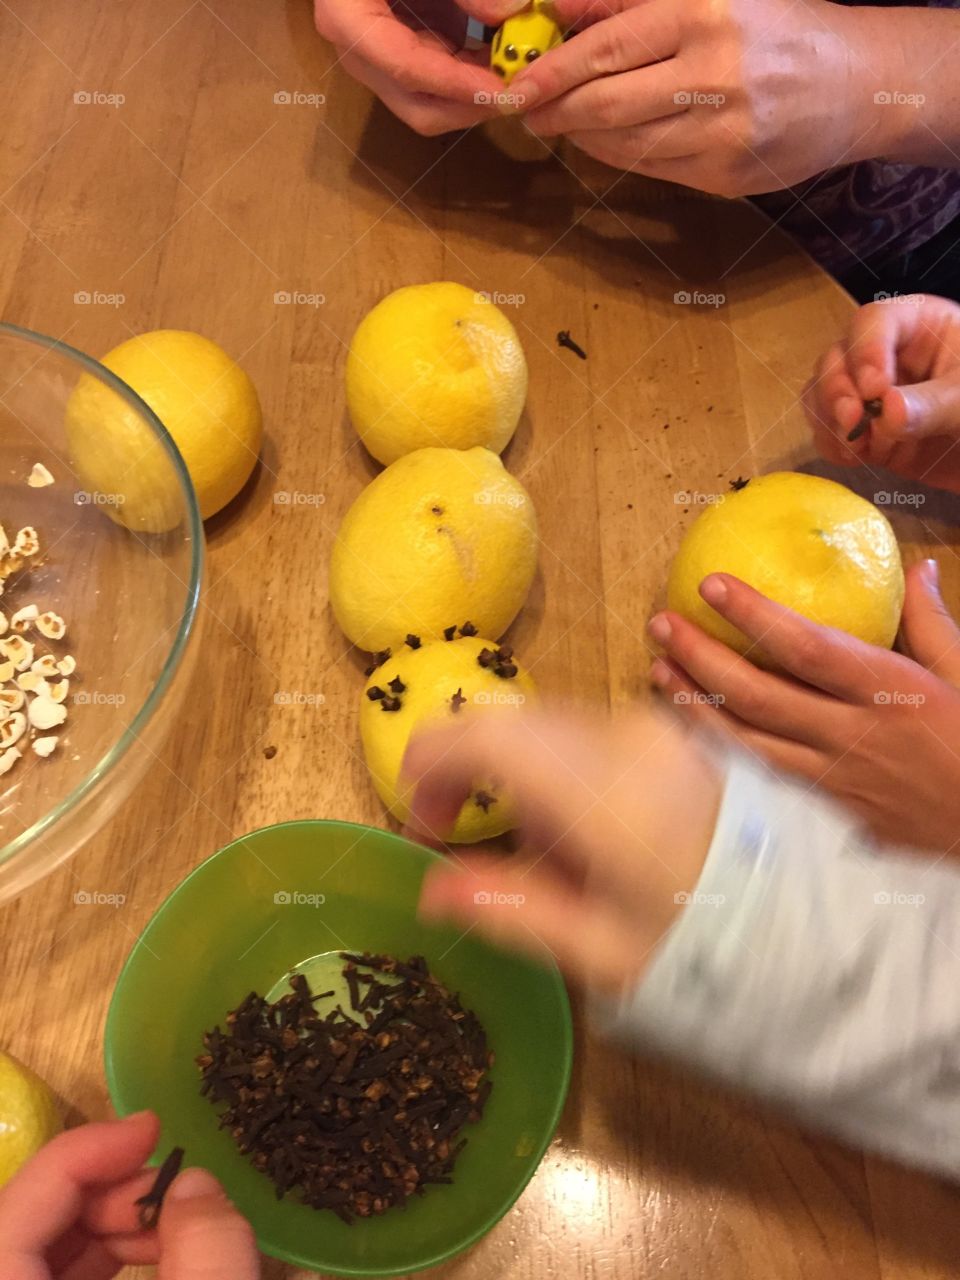 Celebrating the season with cloves in lemons